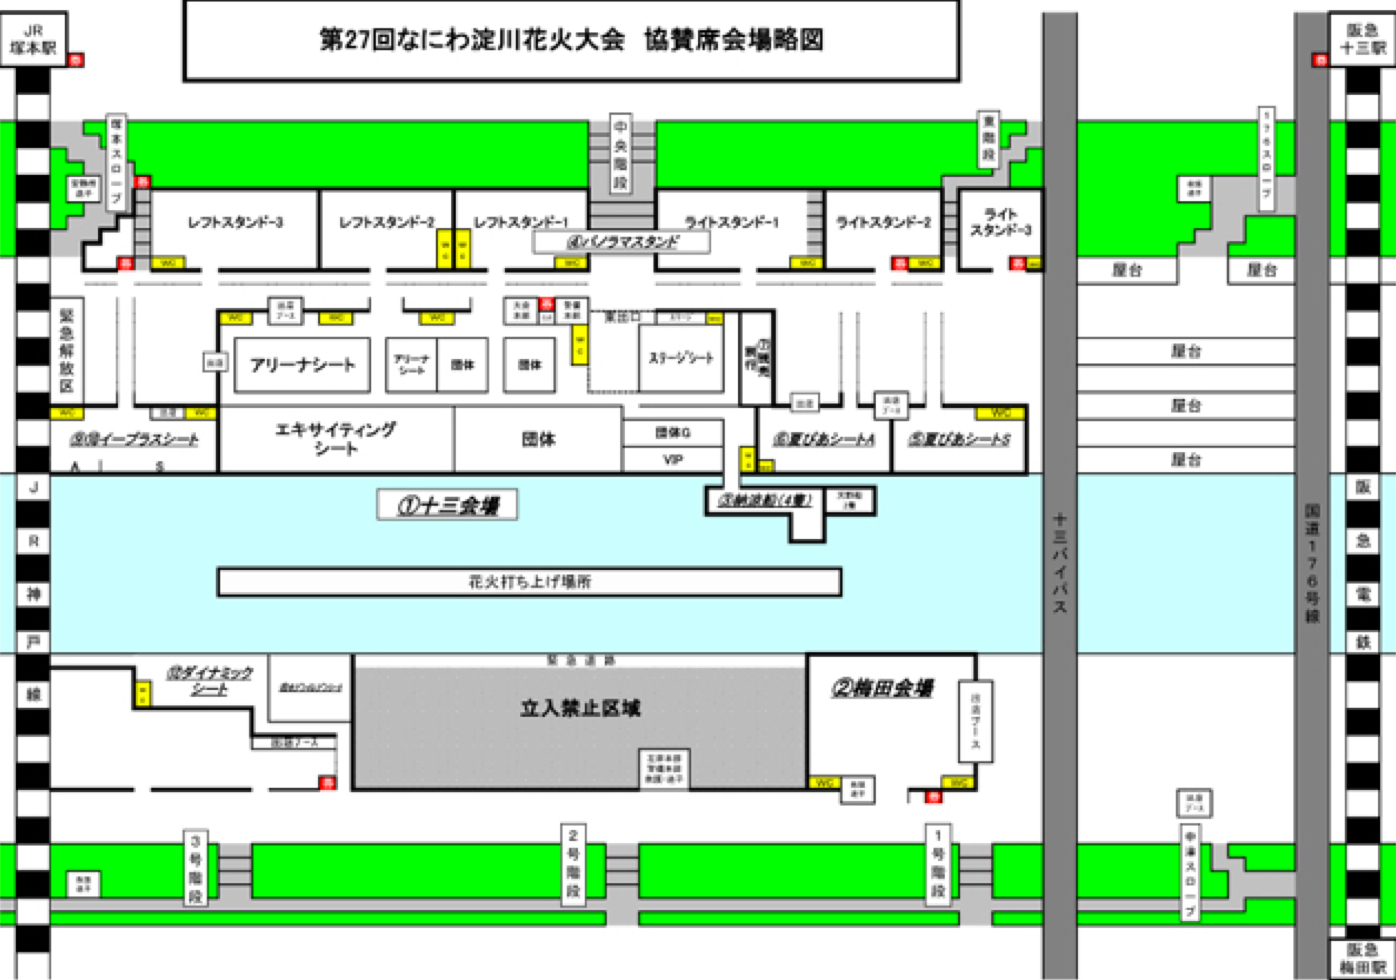 淀川花火大会 16 有料席のチケット 座席表 地図 場所